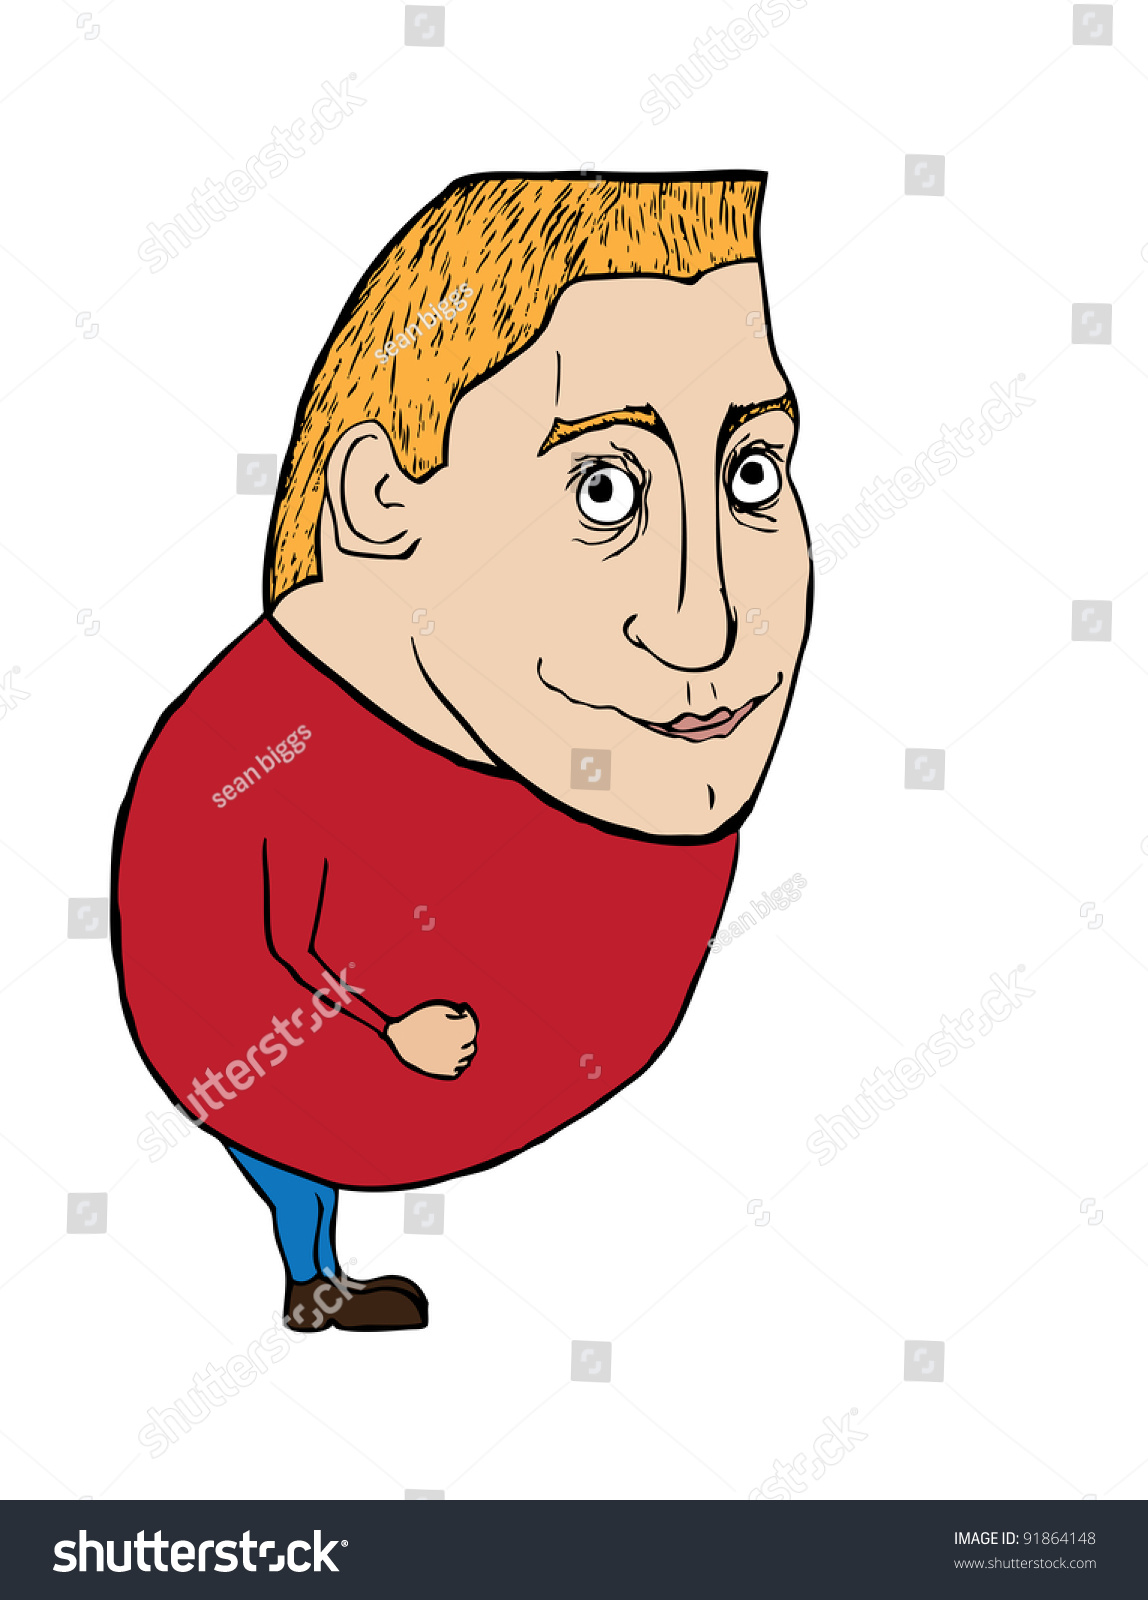 Vector Illustration Of A Fat Cartoon Man - 91864148 : Shutterstock